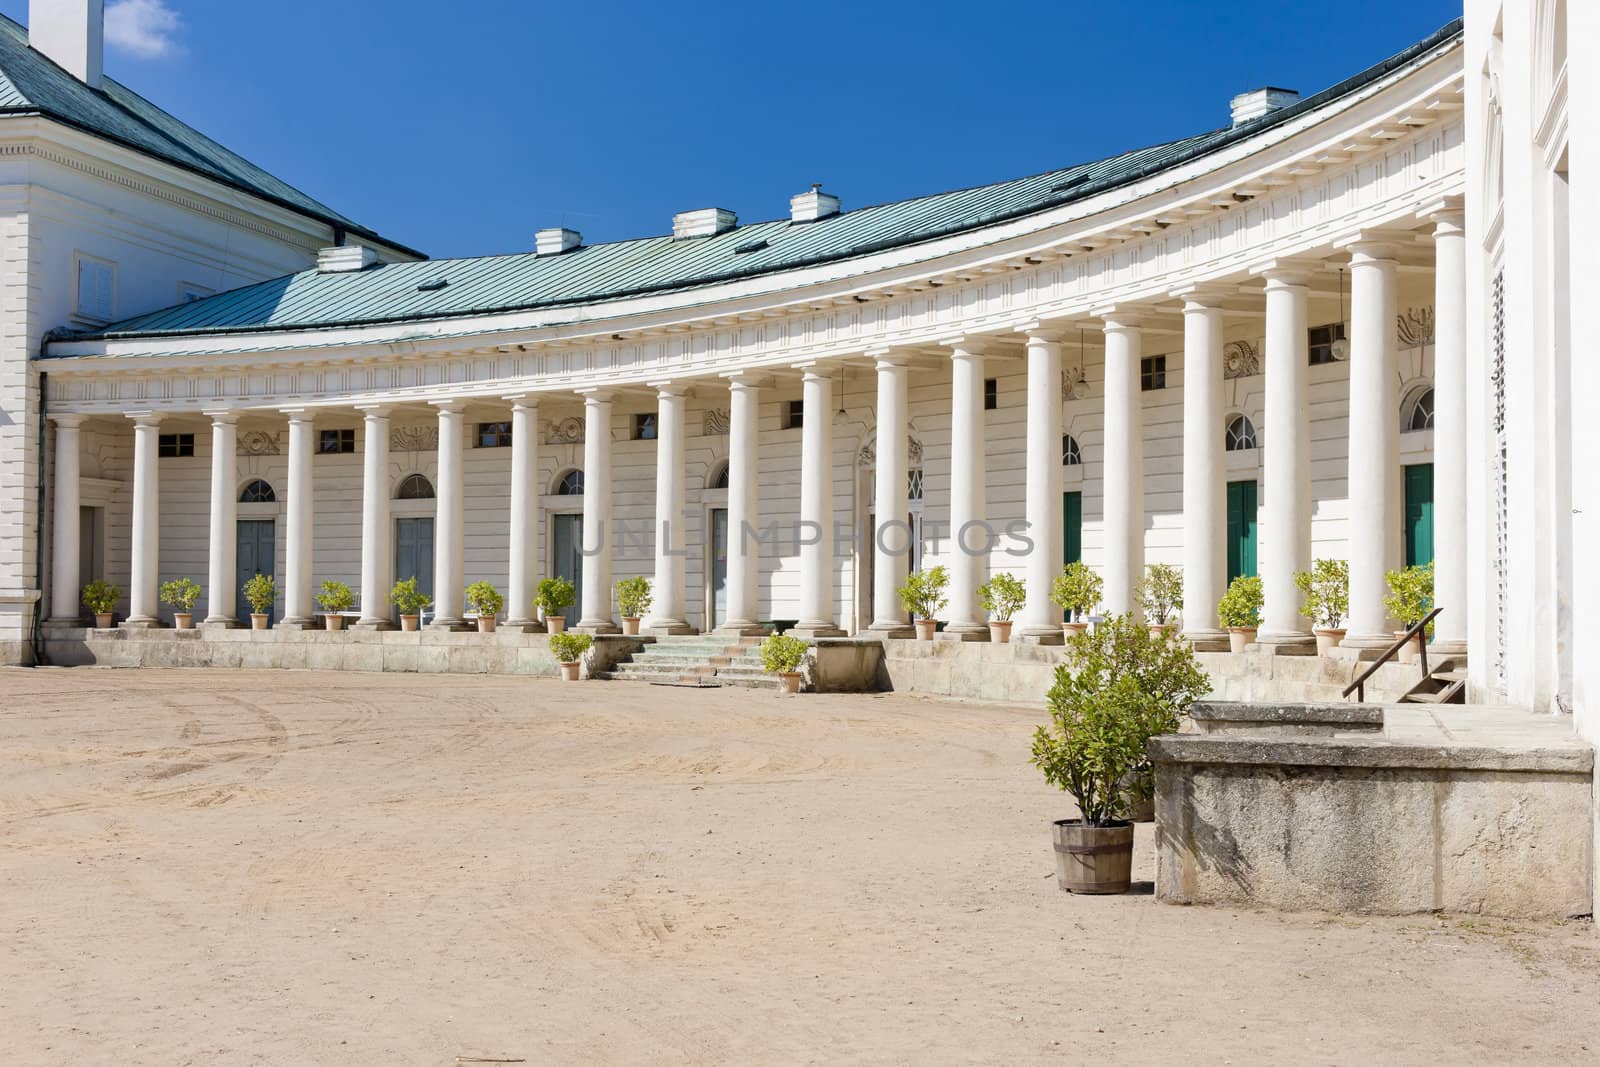 Kacina Palace, Czech Republic by phbcz